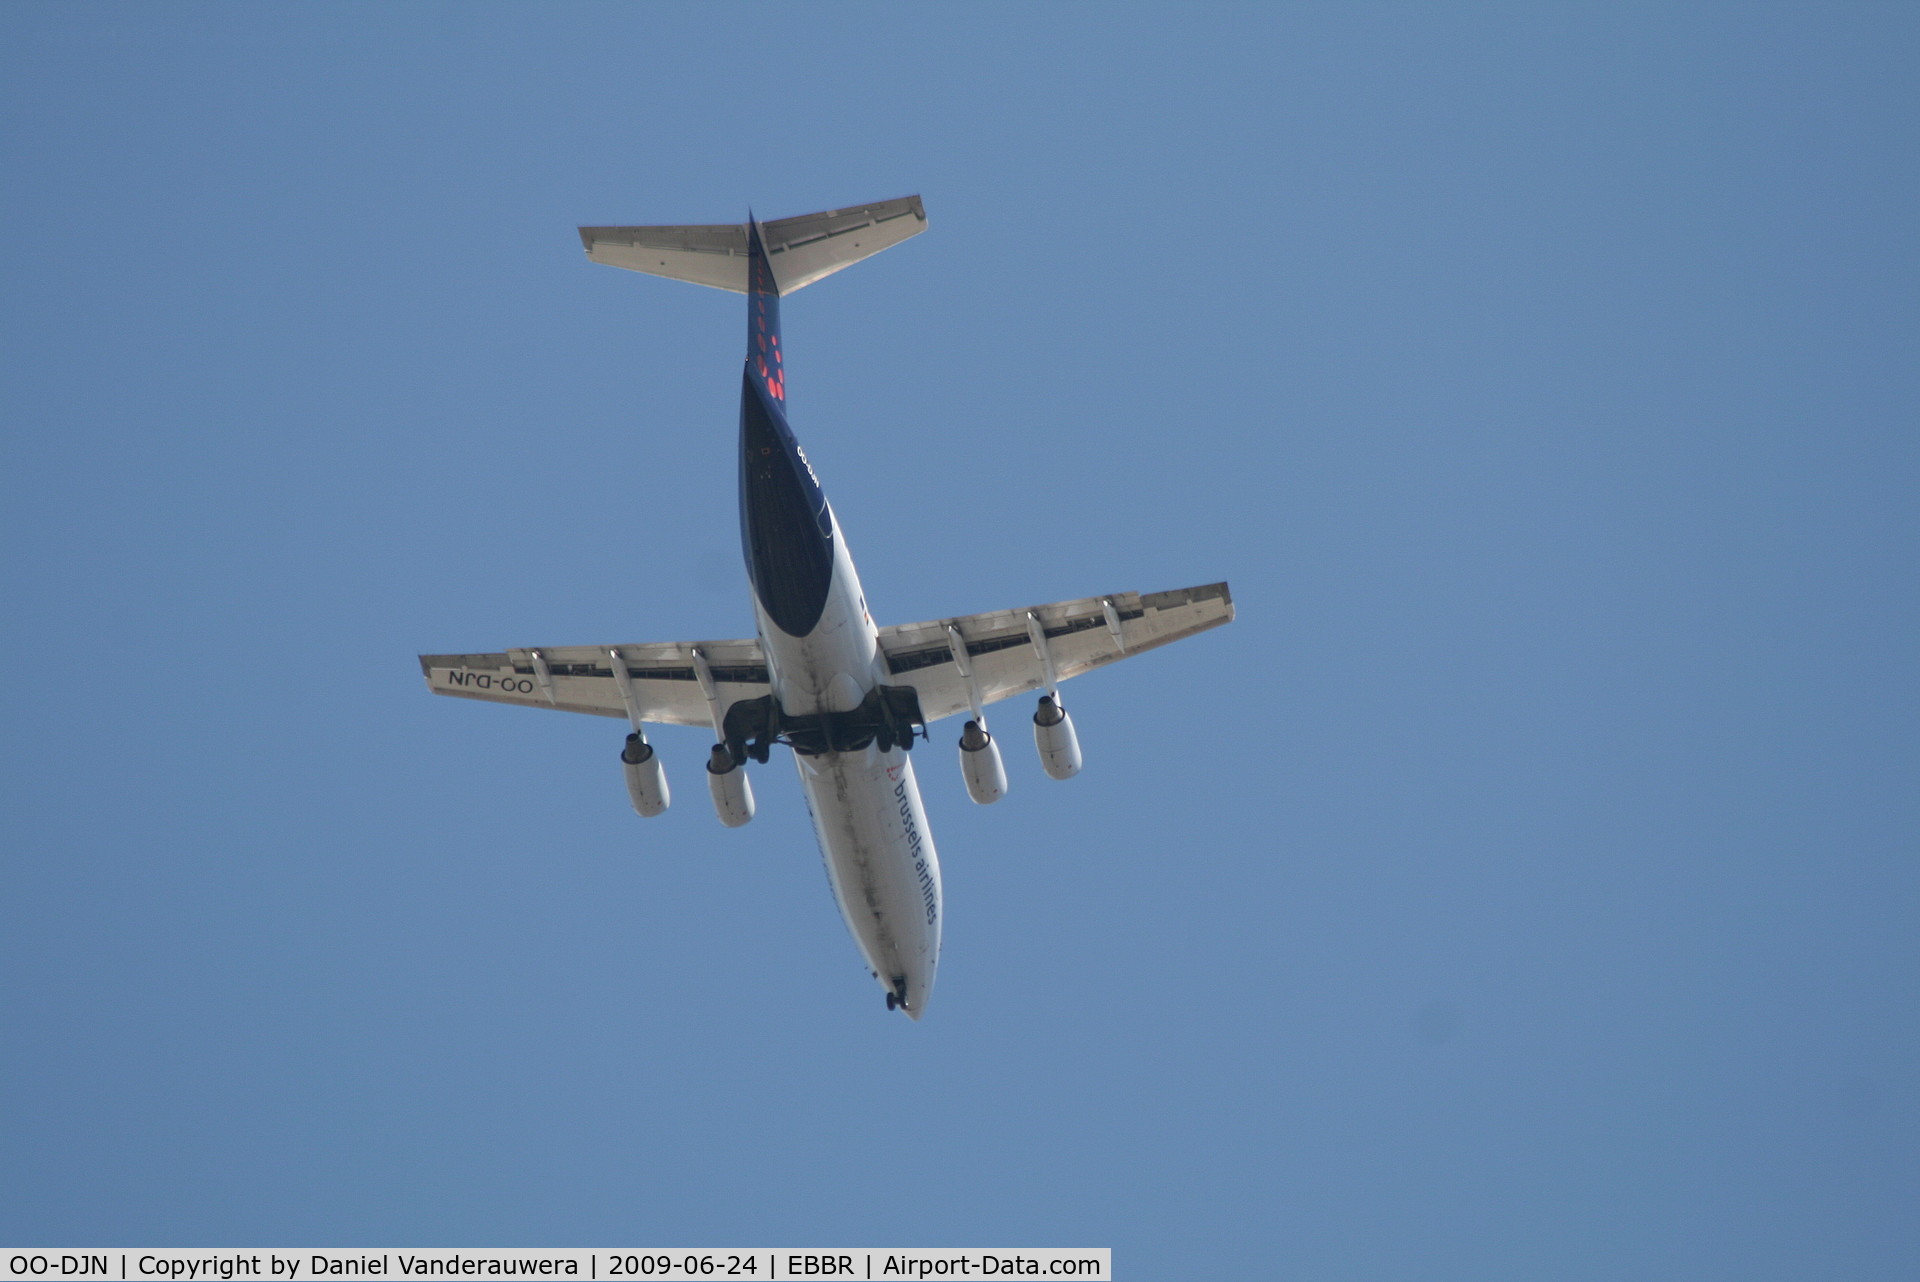 OO-DJN, 1995 British Aerospace Avro 146-RJ85 C/N E.2275, Approach to rwy 07L/R